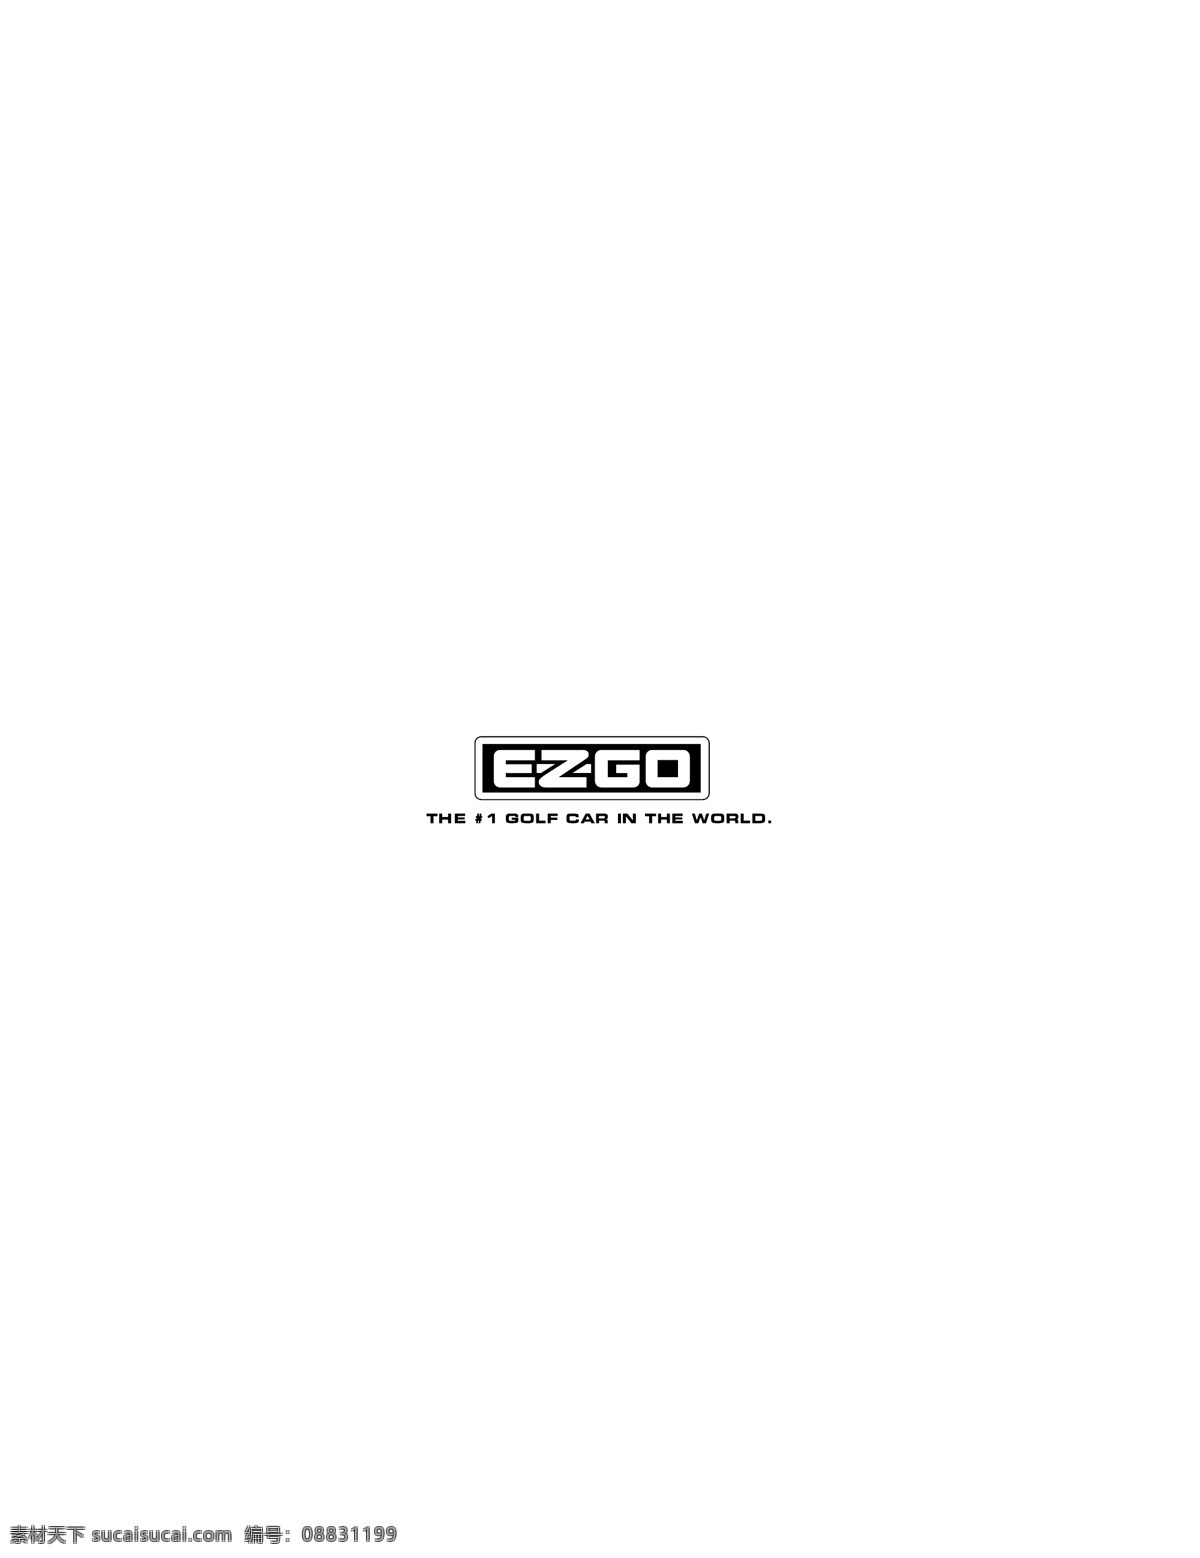 ezgo logo大全 logo 设计欣赏 商业矢量 矢量下载 矢量 汽车 标志 标志设计 欣赏 网页矢量 矢量图 其他矢量图